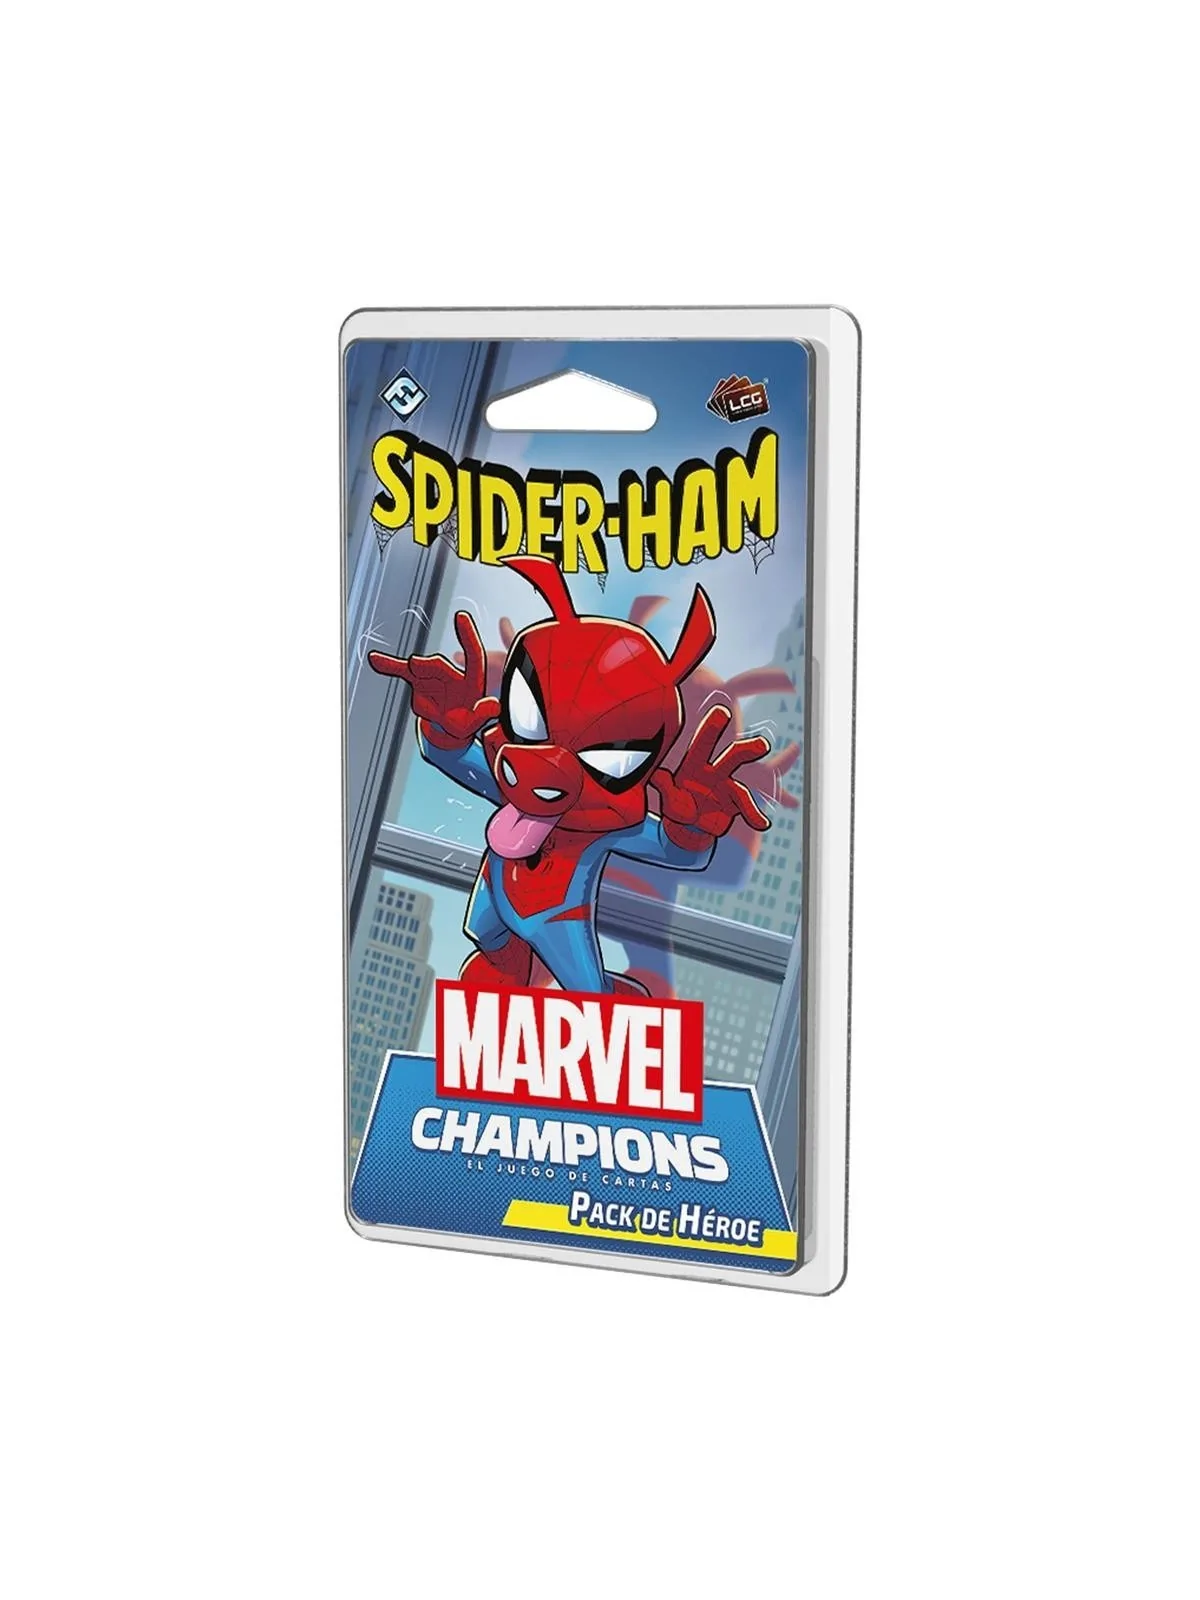 Comprar Spider-Ham barato al mejor precio 15,29 € de Fantasy Flight Ga